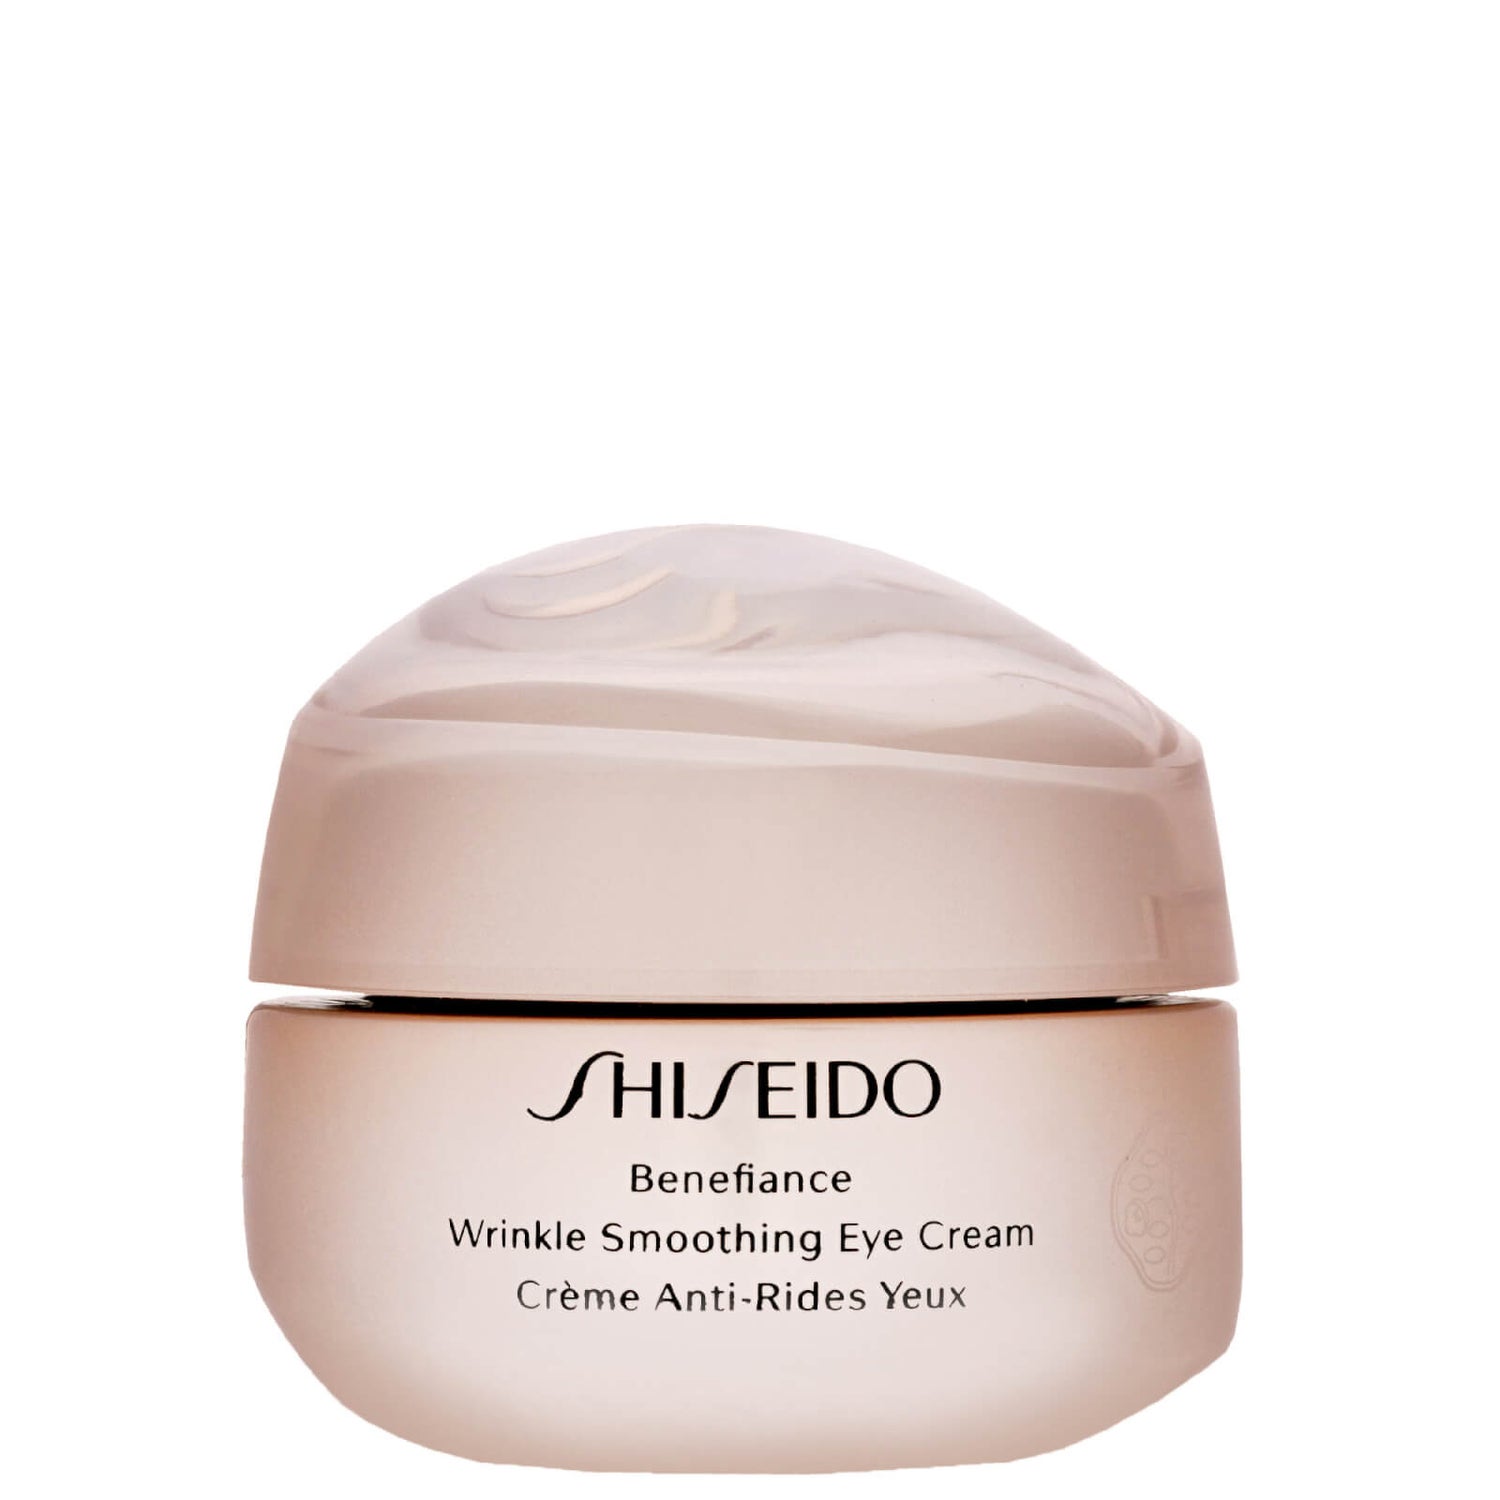 Shiseido Benefiance Eye Cream. Shiseido Wrinkle Smoothing Cream. Shiseido Anti Wrinkle Cream. Shiseido Benefiance Eye Cream купить. Shiseido benefiance wrinkle smoothing